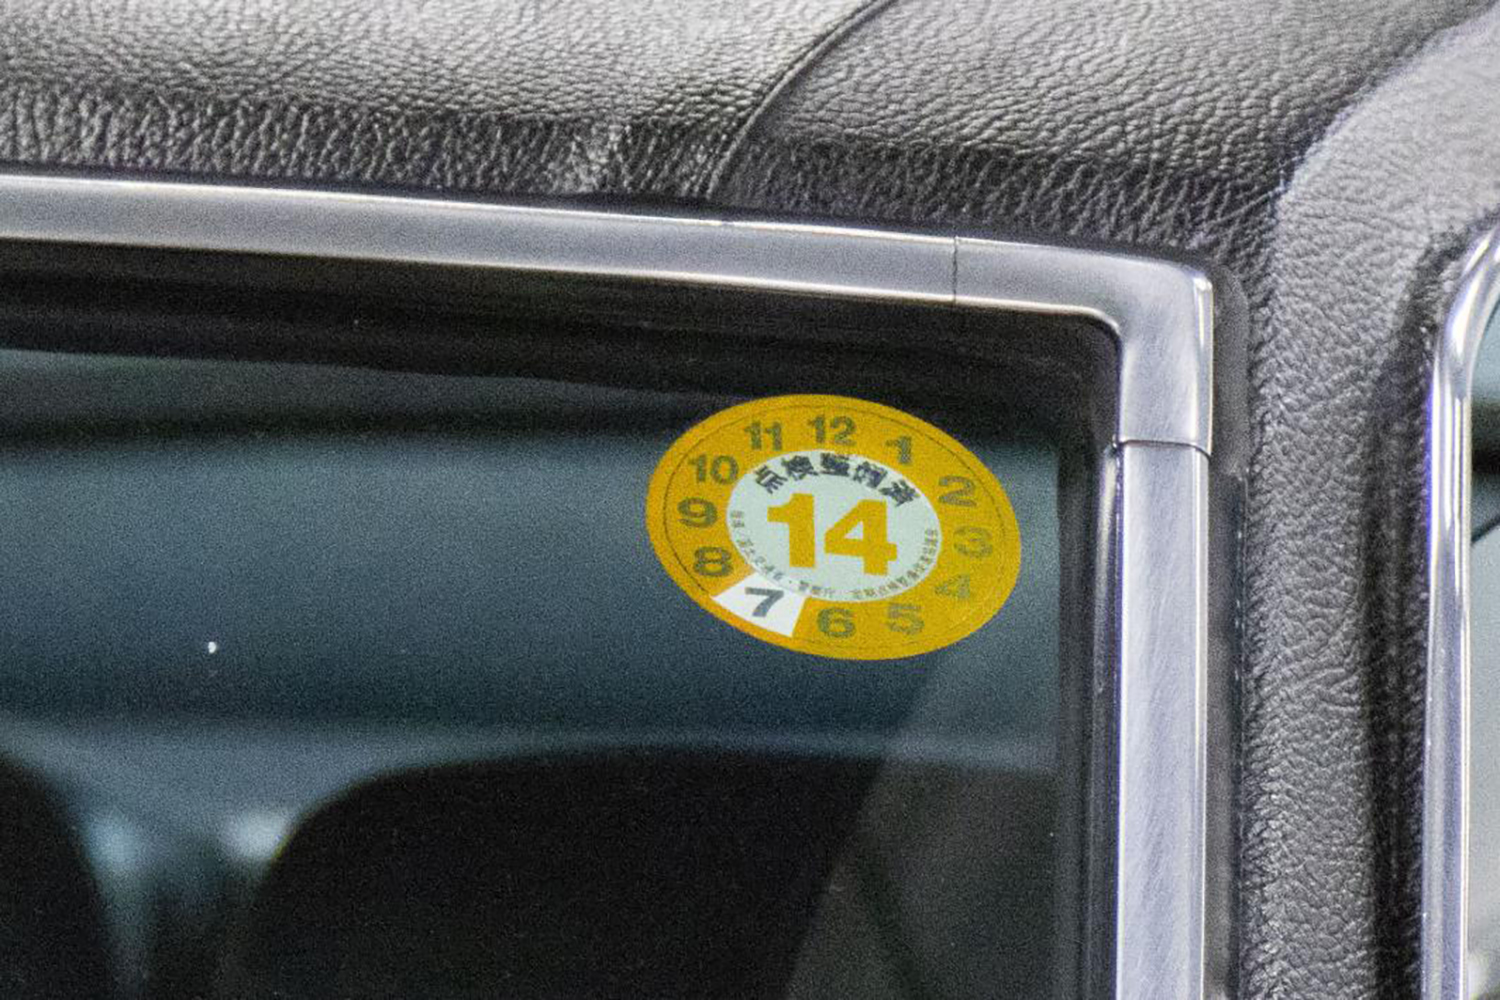 保管場所標章を貼ってないクルマはあり クルマの公的なステッカー３つの貼付義務について解説 自動車情報 ニュース Web Cartop